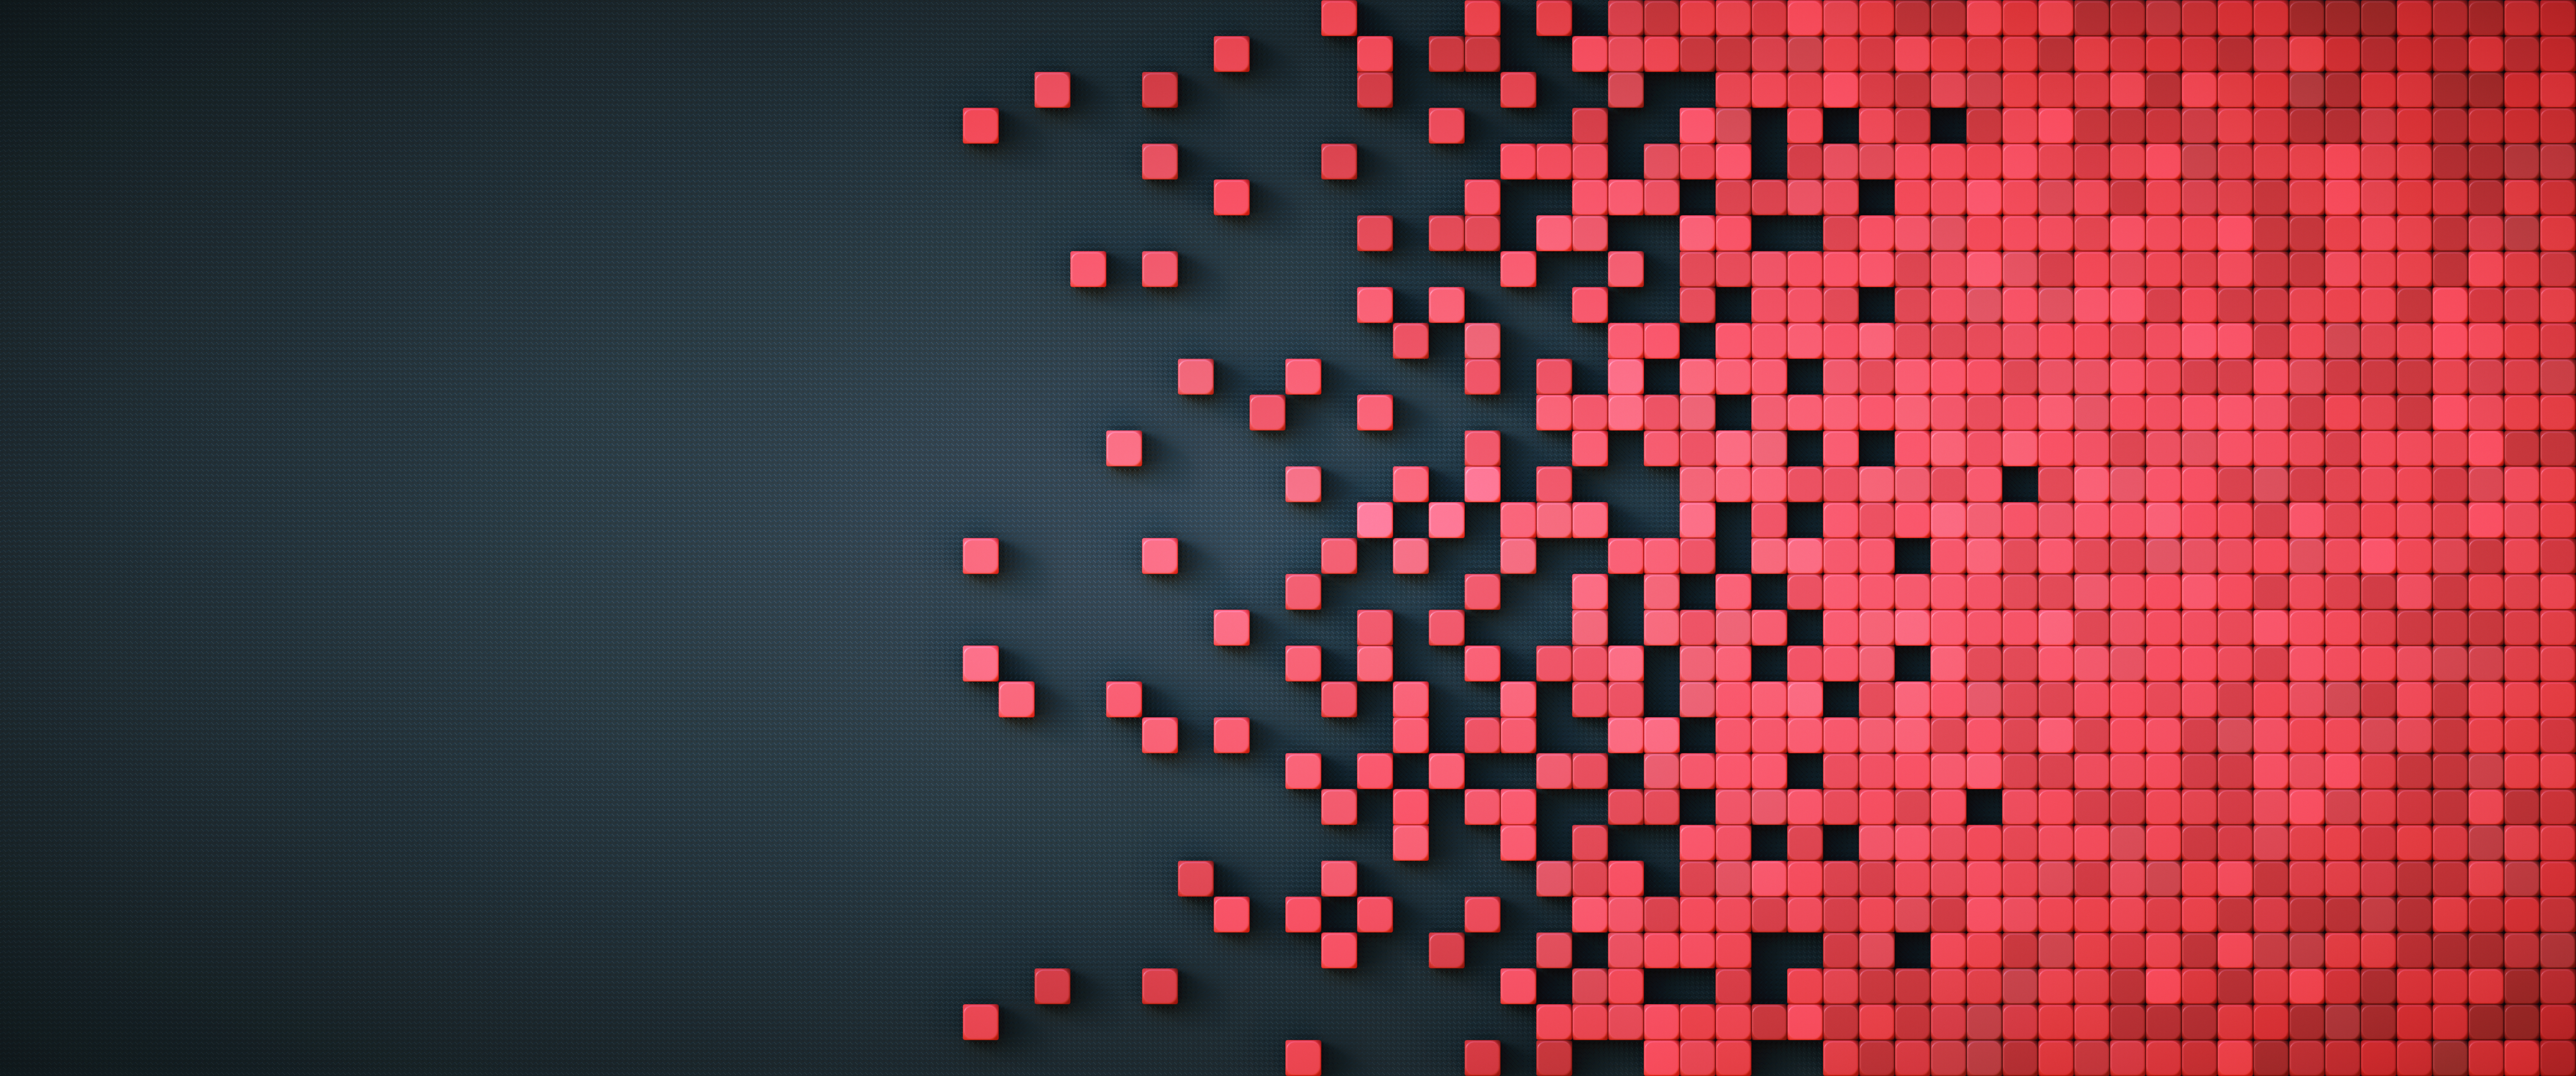 Pixelierte Datendarstellung mit roten physischen Würfelformen auf schwarzem künstlichem Hintergrund, kachelbare Komposition